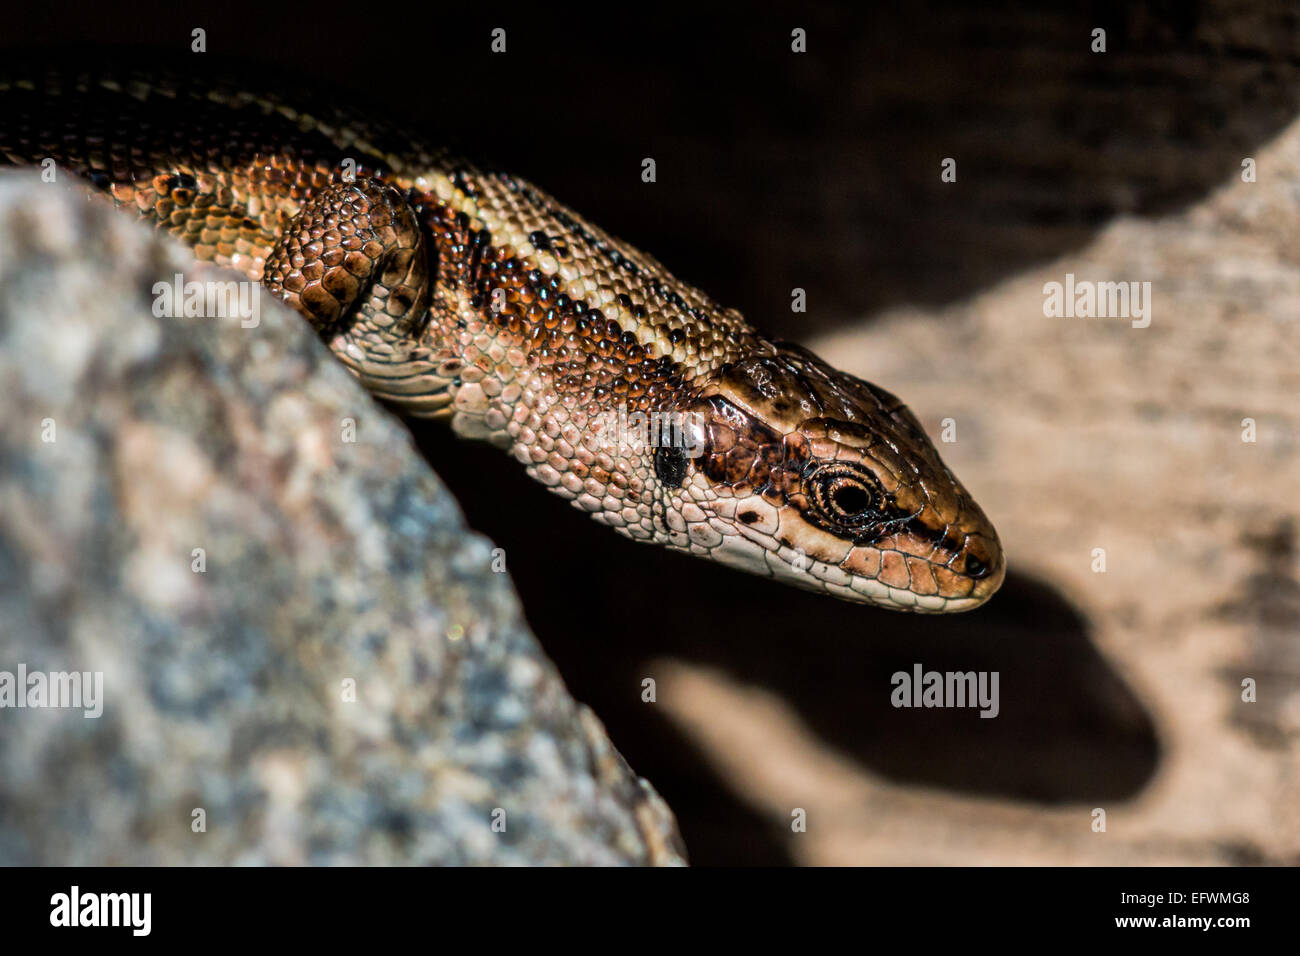 A viviparous lizard (Zootoca vivipara) Stock Photo